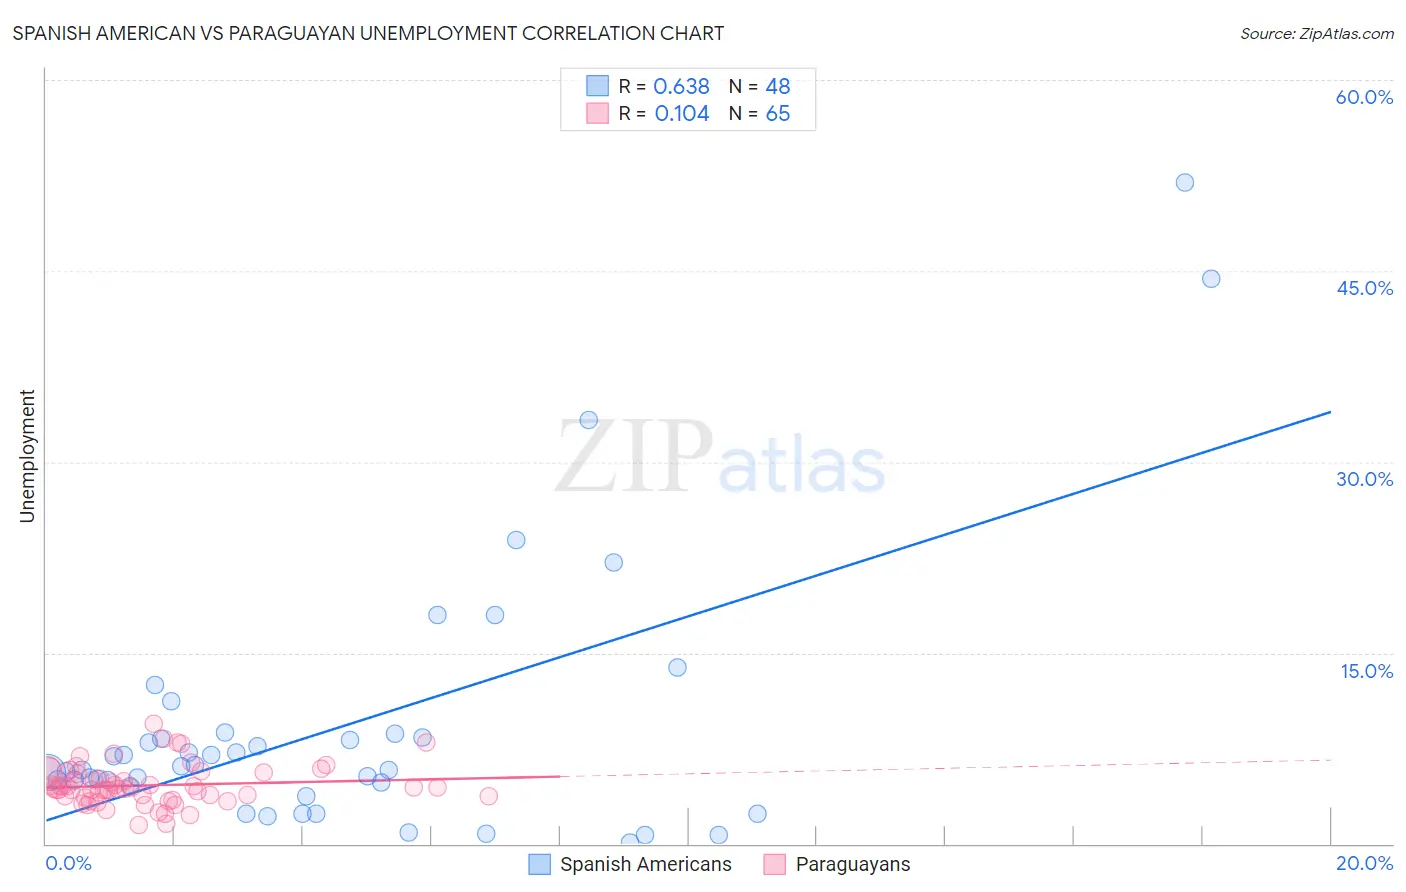 Spanish American vs Paraguayan Unemployment